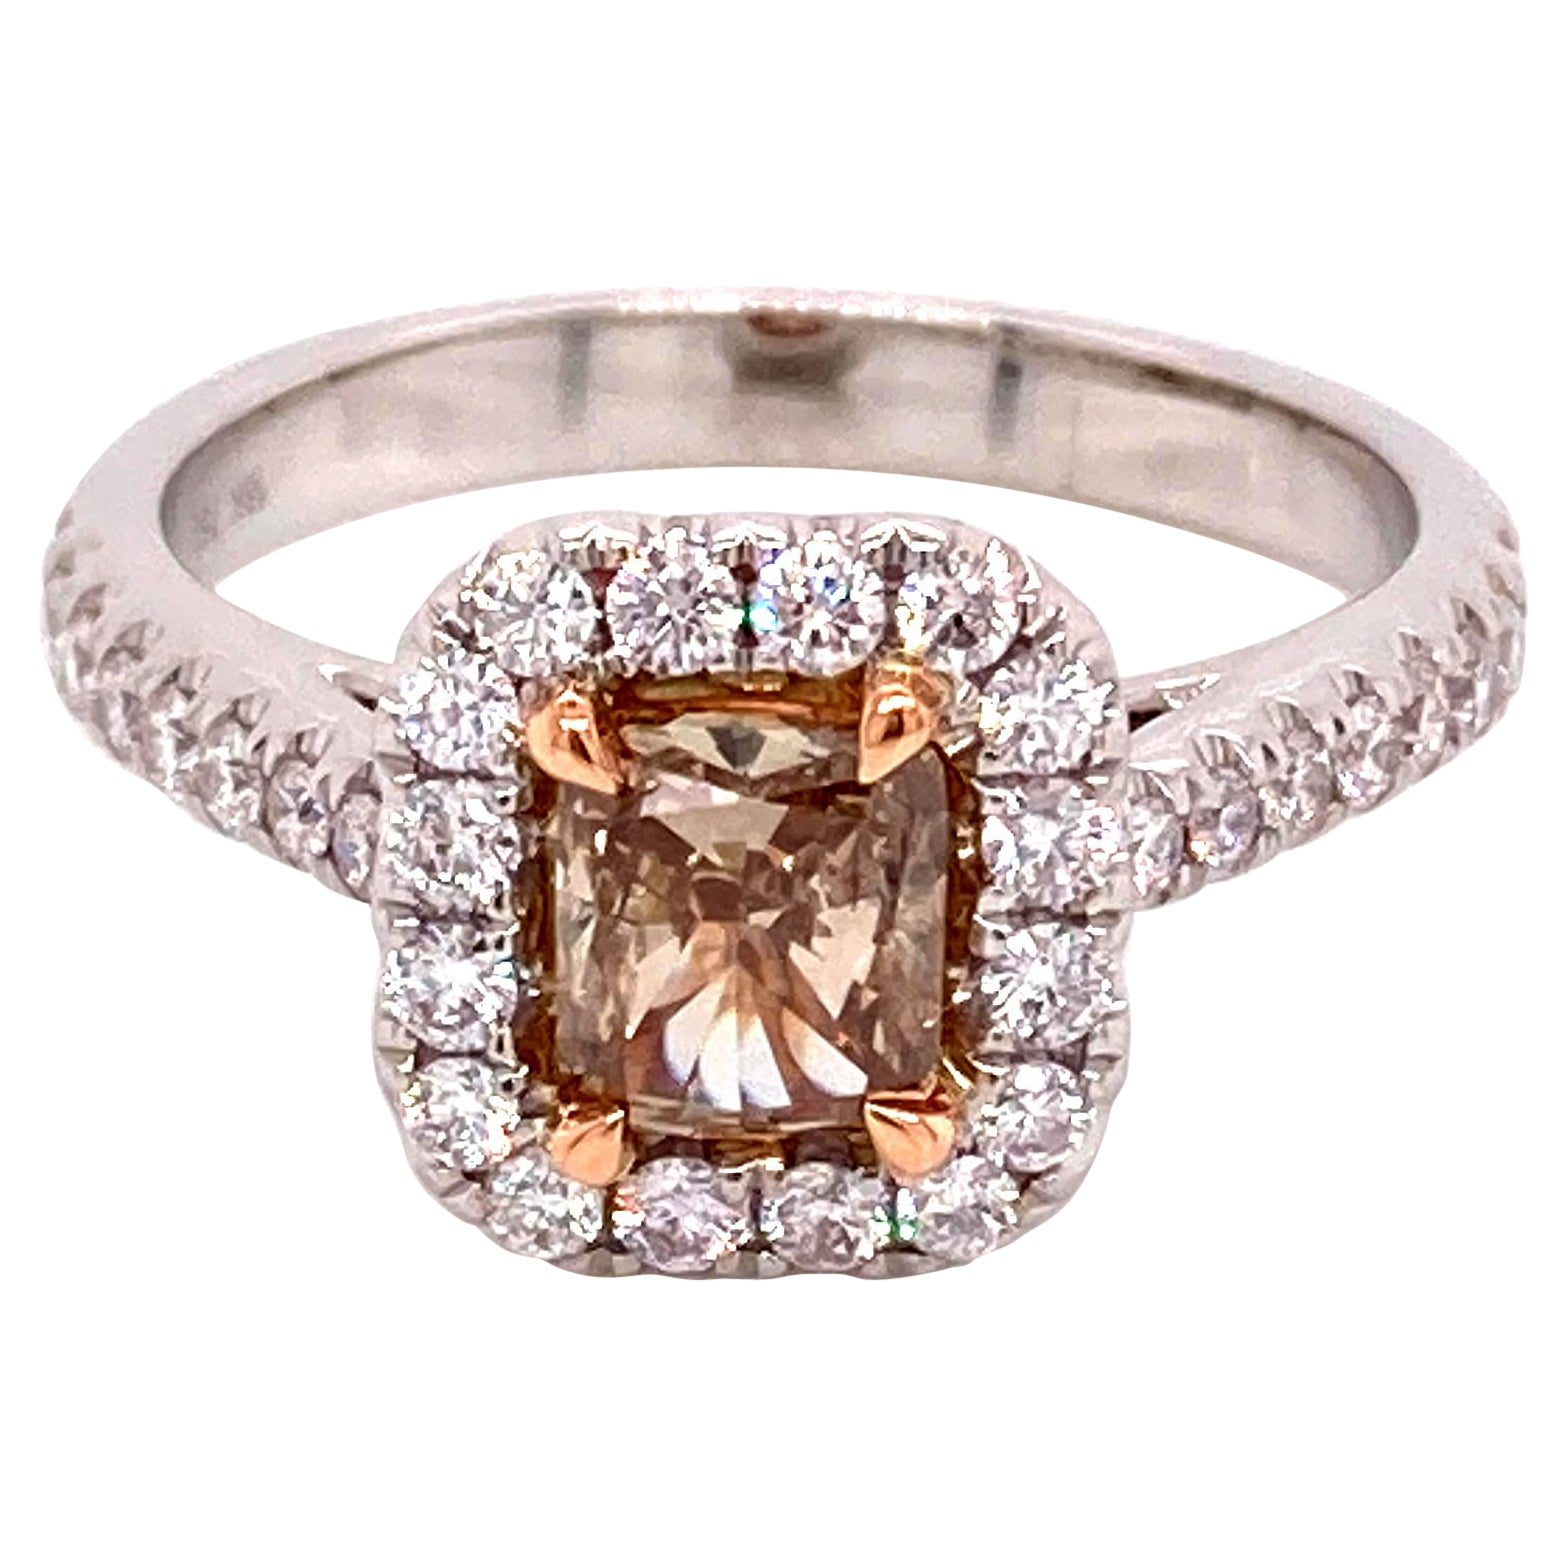 Alexander 1.18ctt Fancy Intense Brown Diamond Ring 18k White Gold For Sale